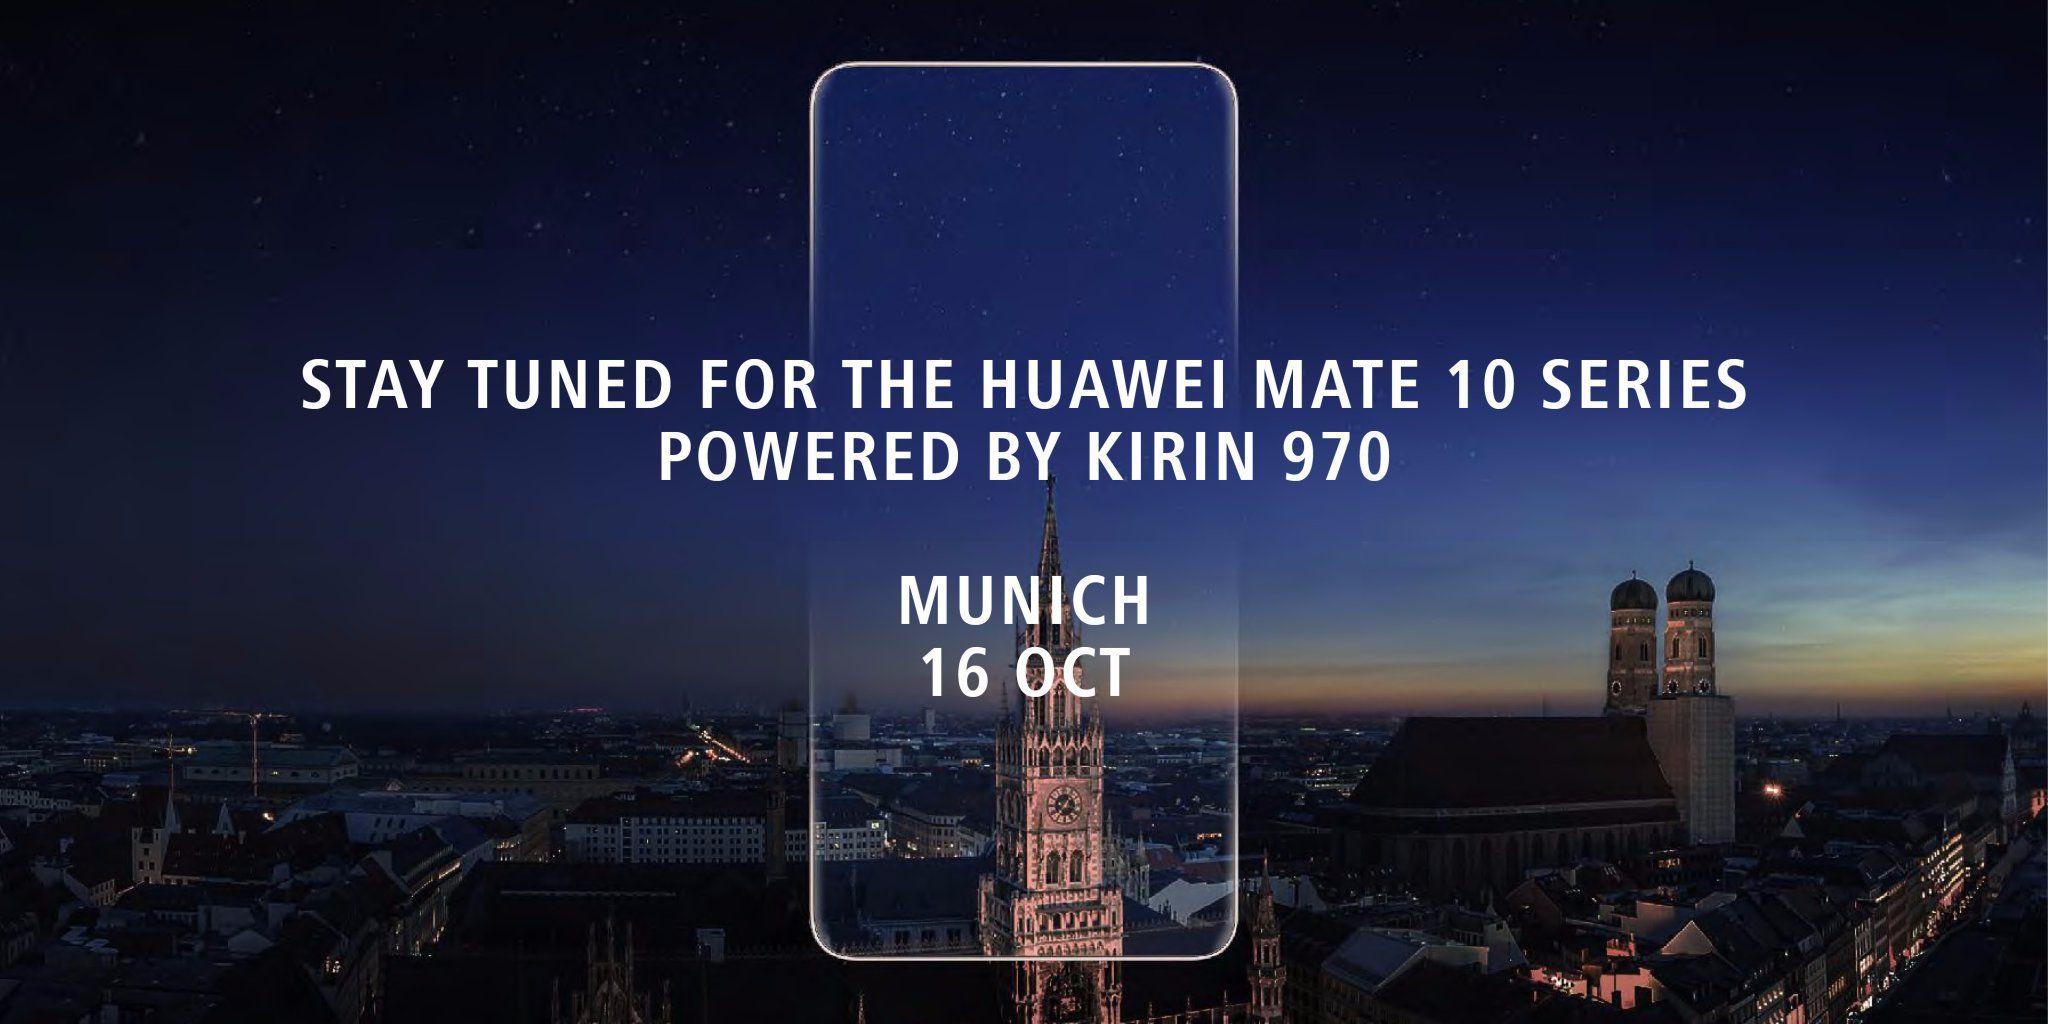 Huawei คอนเฟิร์มงานเปิดตัวมือถือเรือธงกล้องคู่ Huawei Mate 10 วันที่ 16 ตุลาคมนี้